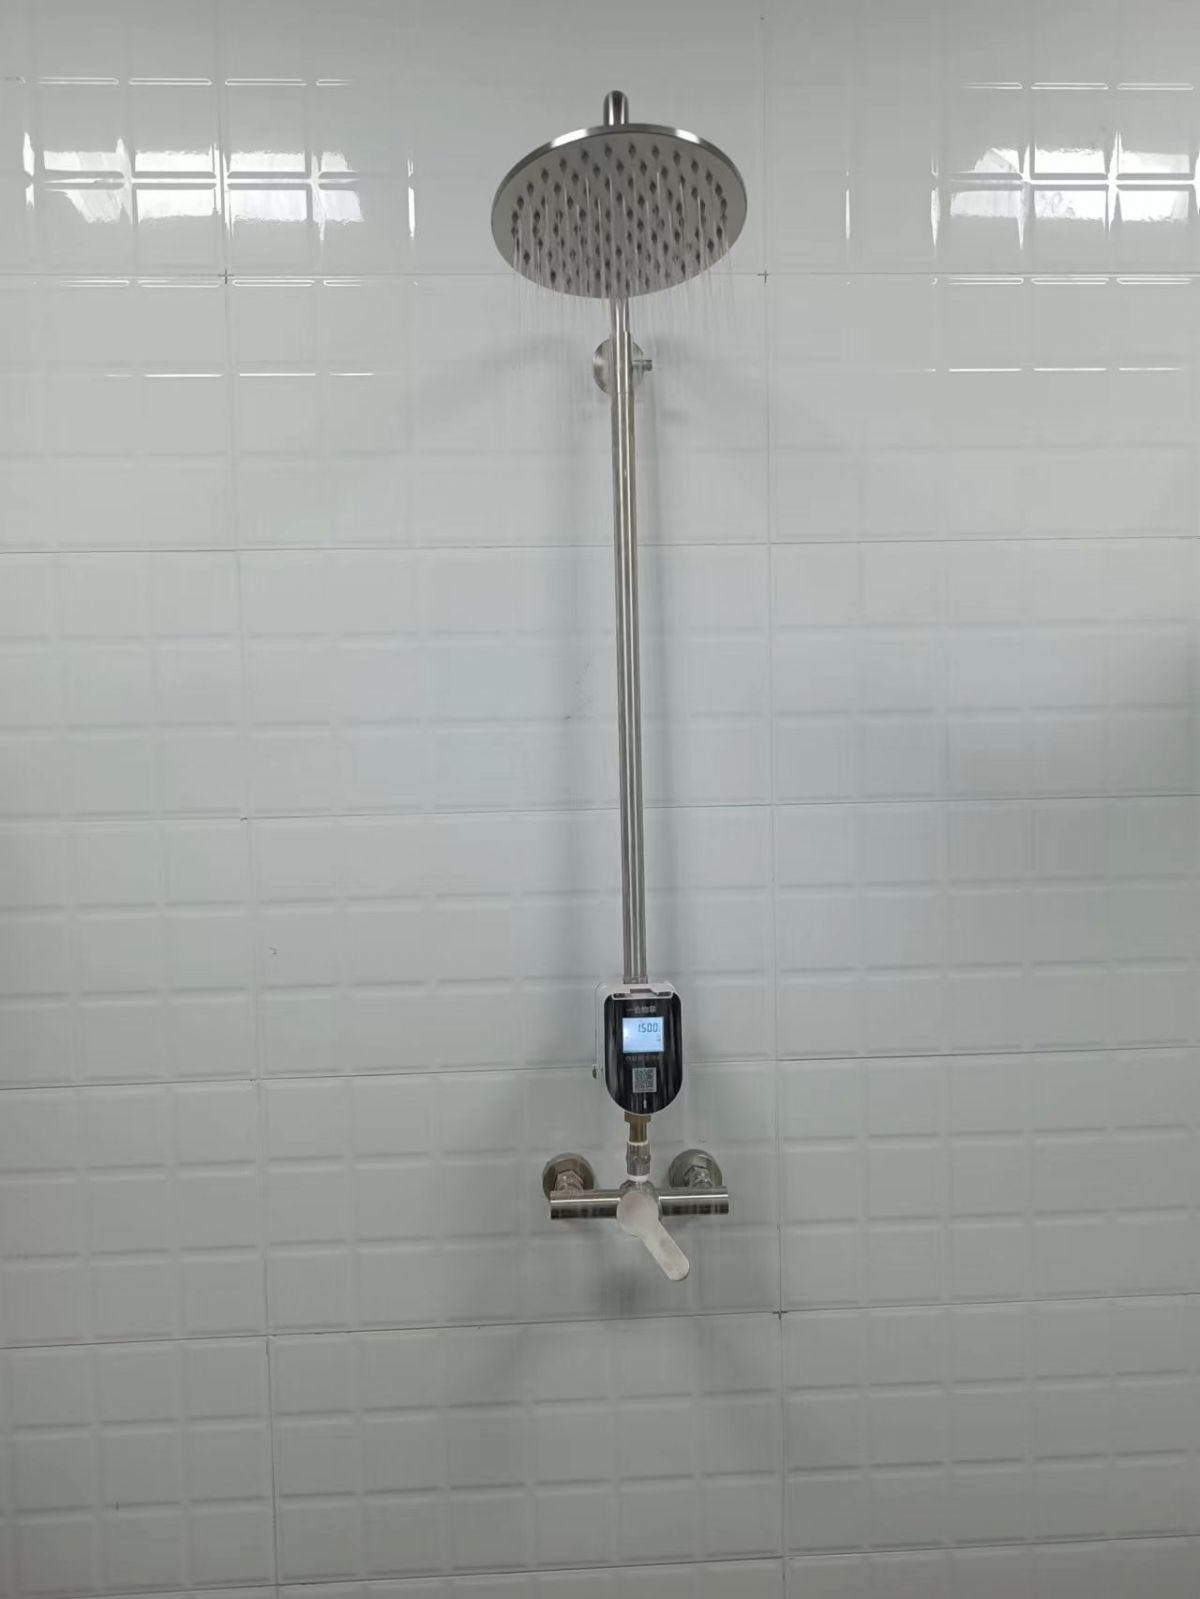 浴室IC卡水控系统，澡堂打卡水控机，淋浴IC卡水控器